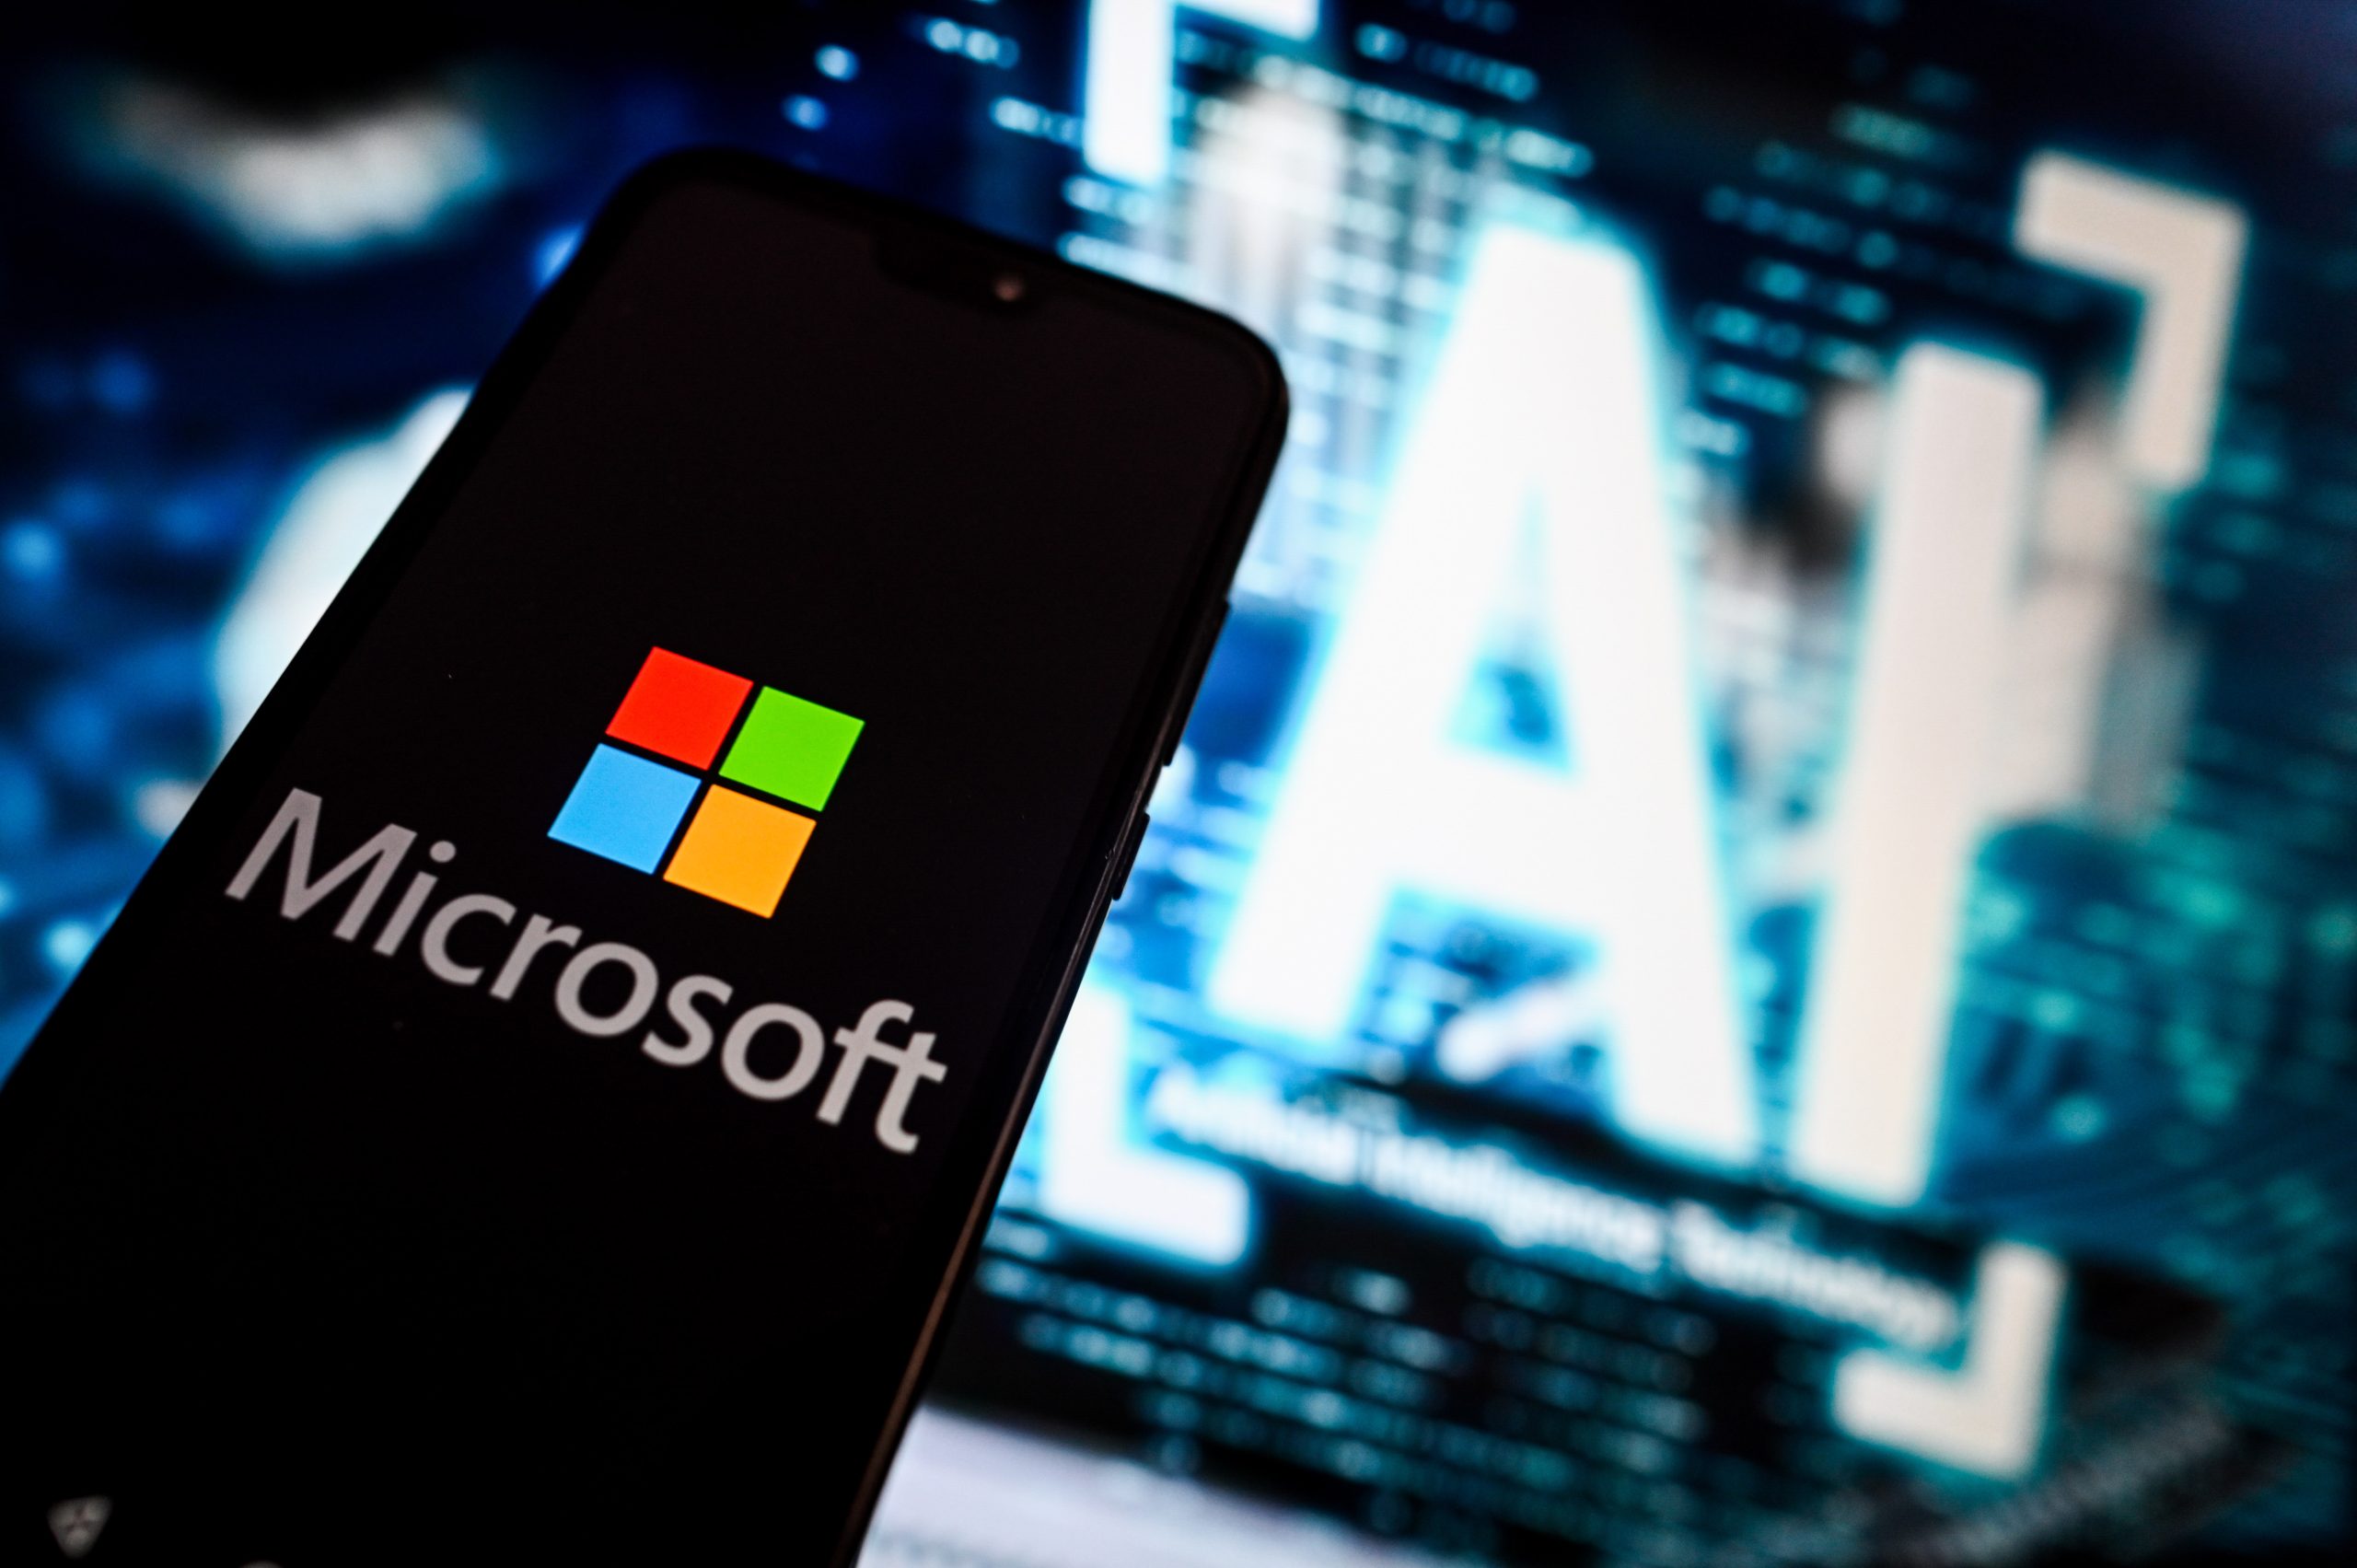 Microsoft a dezvăluit recent intenția de a inaugura un nou centru dedicat inteligenței artificiale (AI) pe continentul european